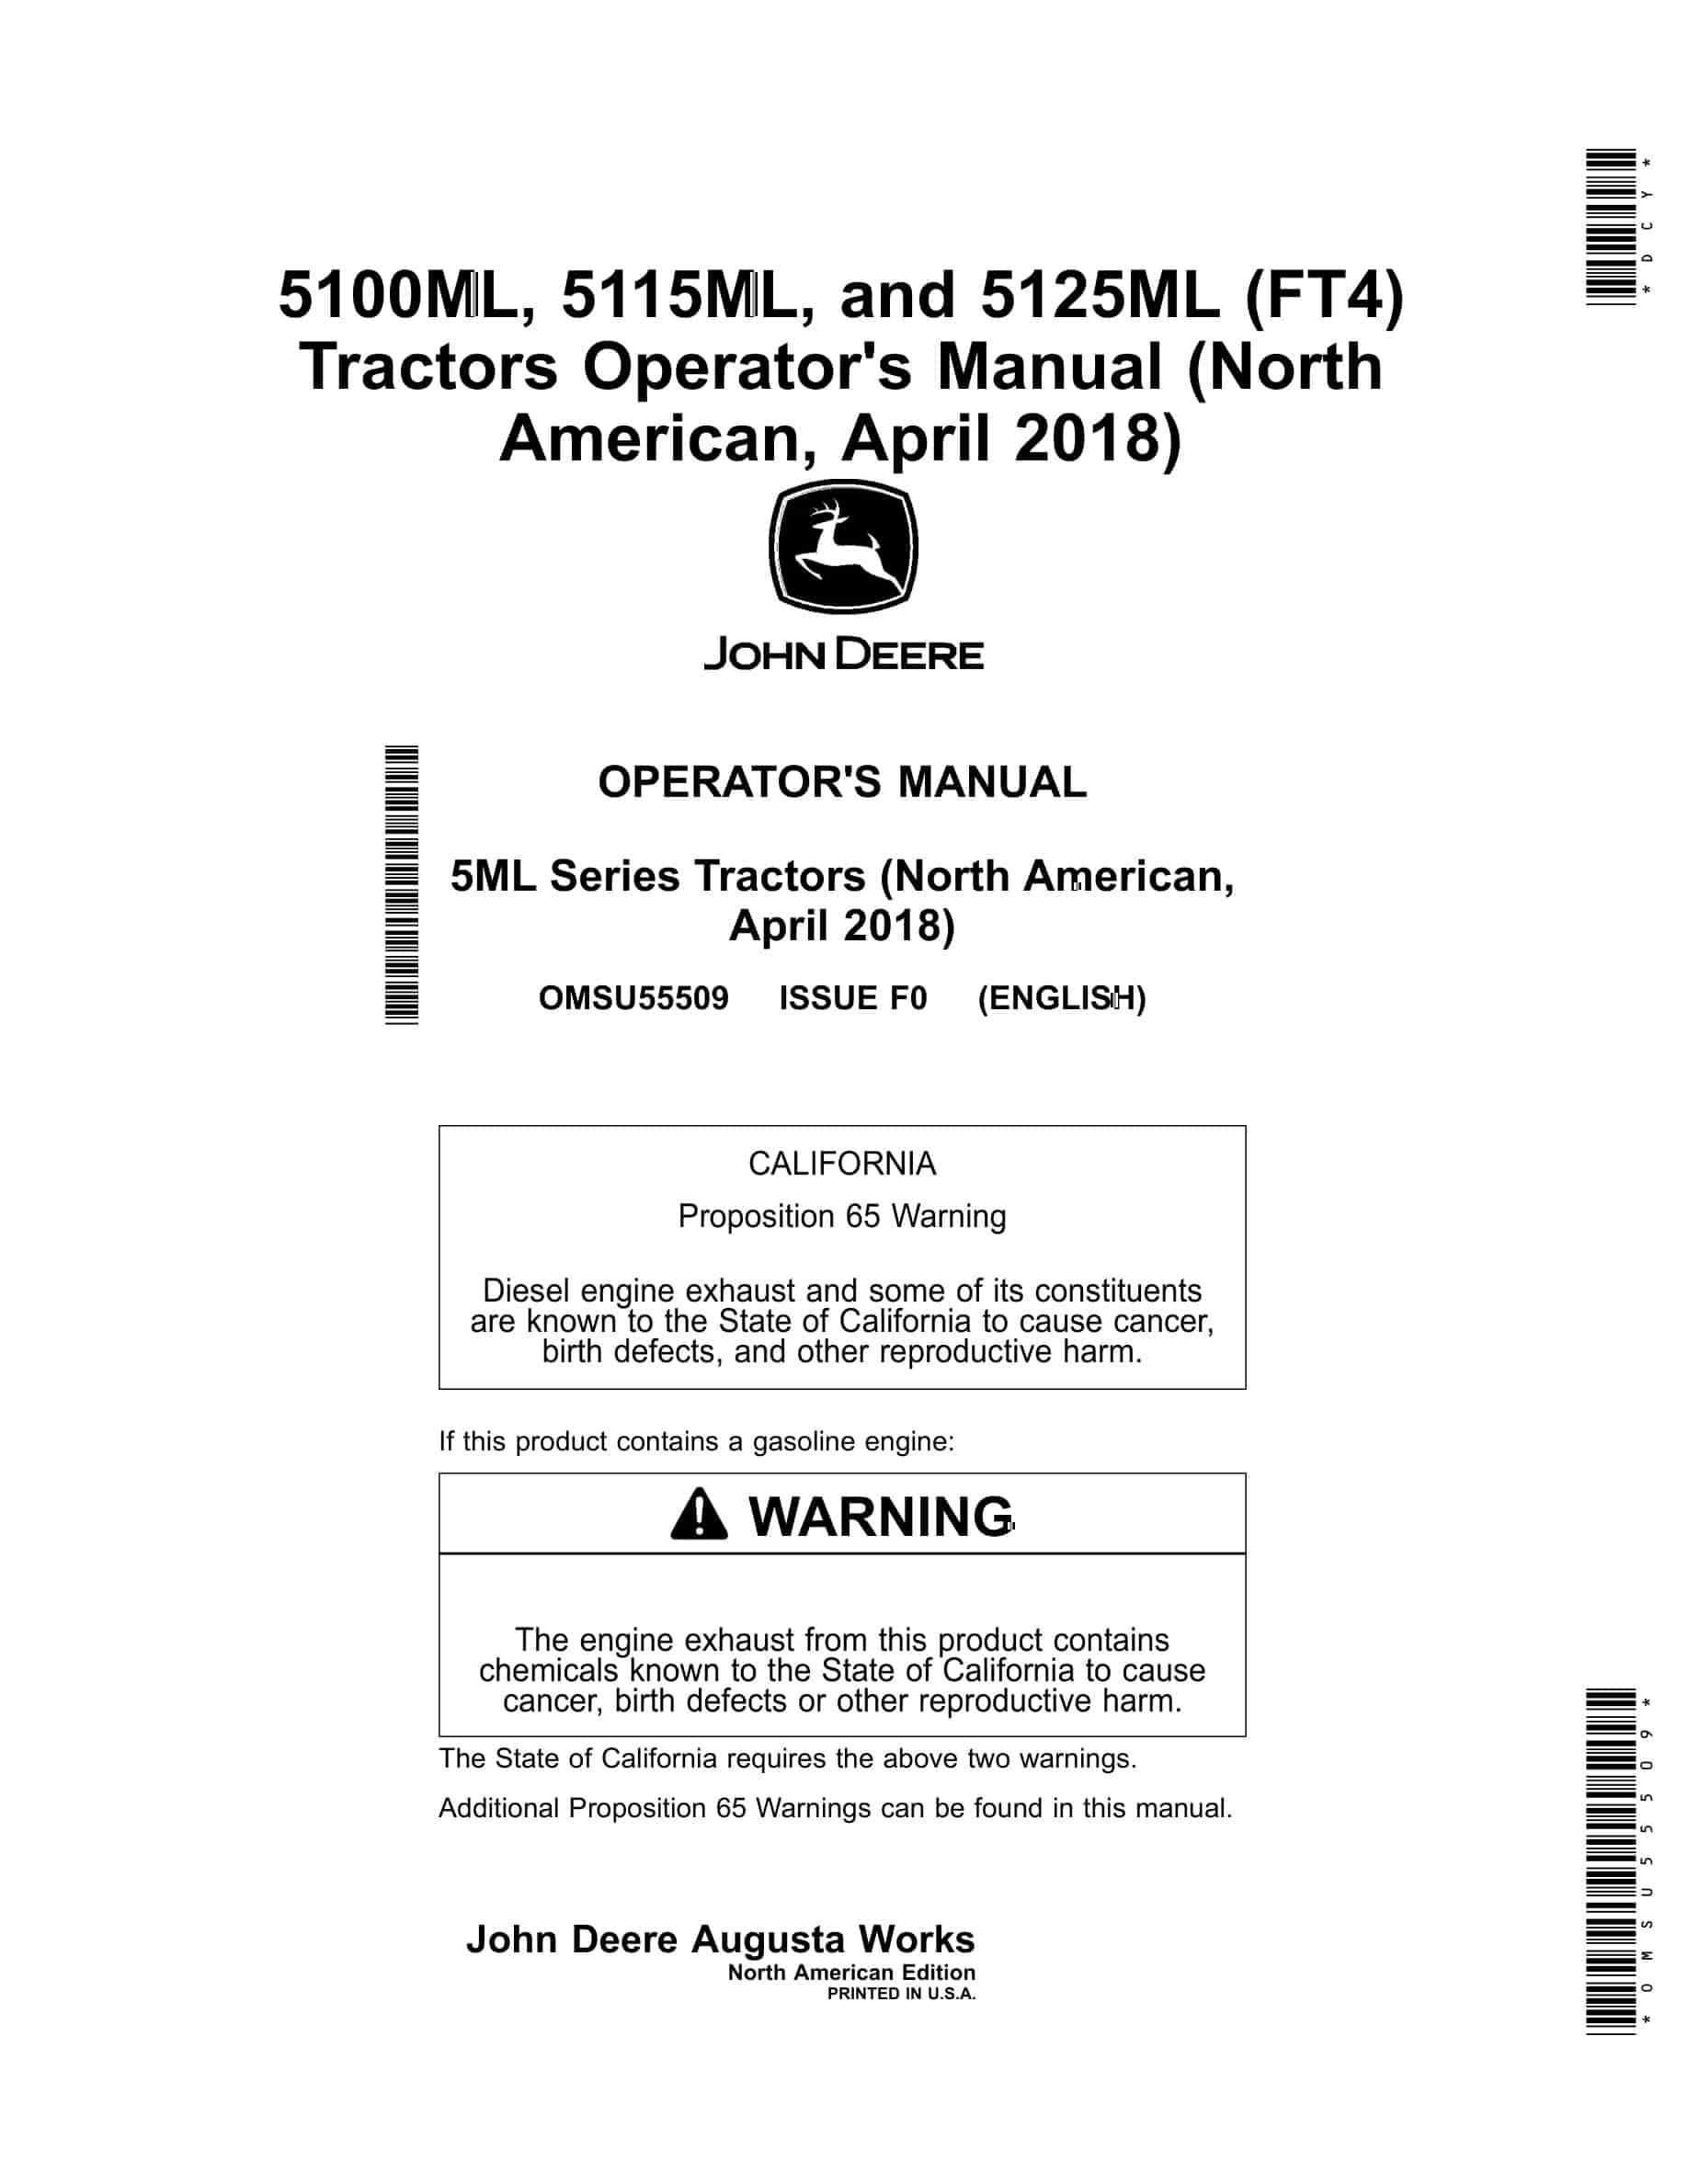 John Deere 5100ML, 5115ML, and 5125ML (FT4) Tractor Operator Manual OMSU55509-1